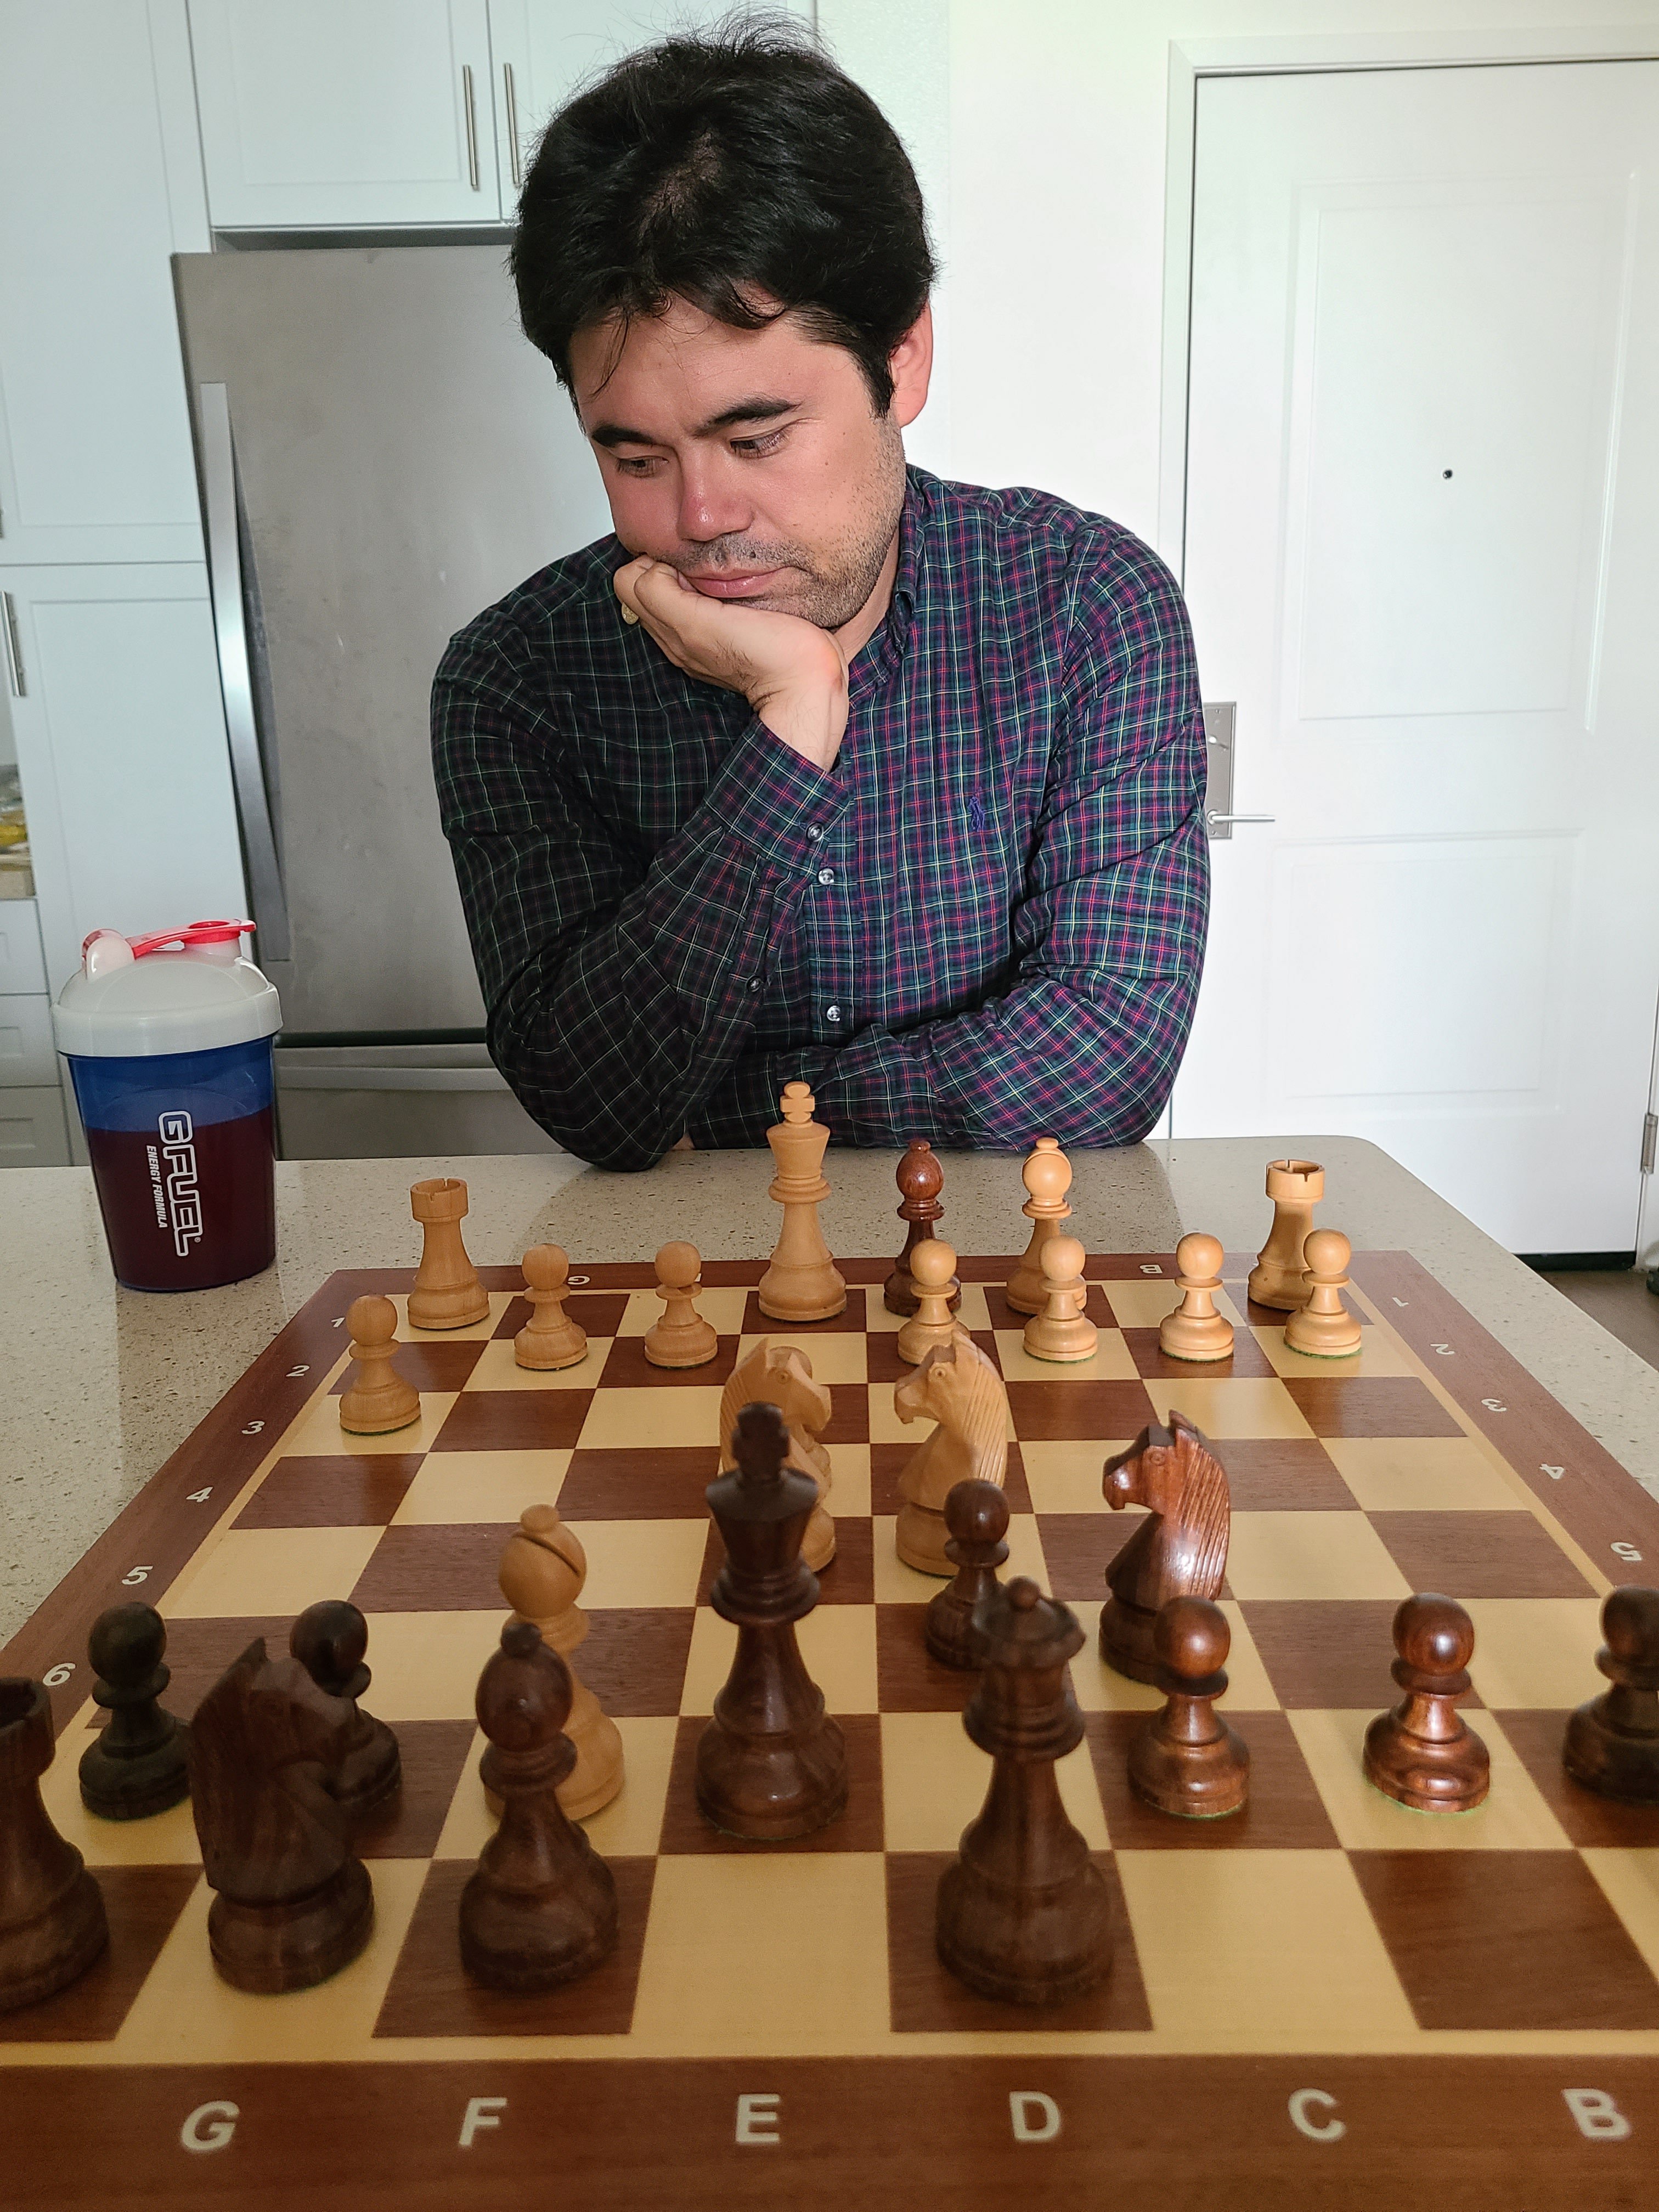 dude thinks he's Hikaru.. #hikarunakamura #chesstok #chess #ultrainsin, hikaru predicts entire game